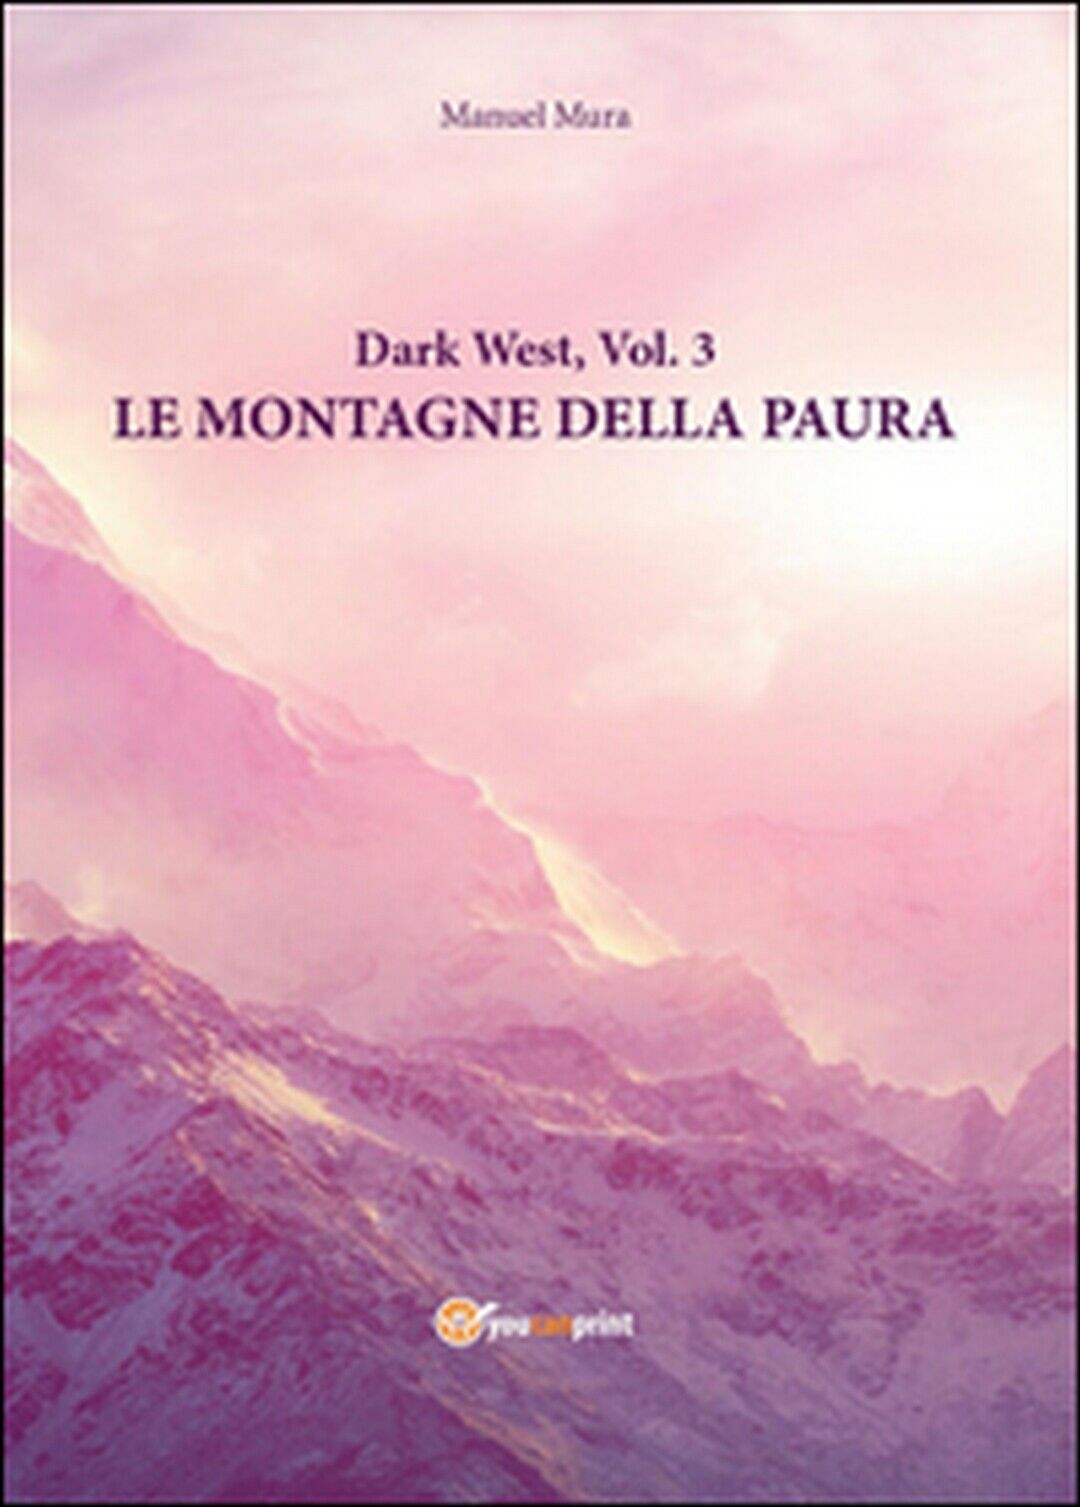 Le montagne della paura. Dark west Vol.3  di Manuel Mura,  2016,  Youcanprint libro usato